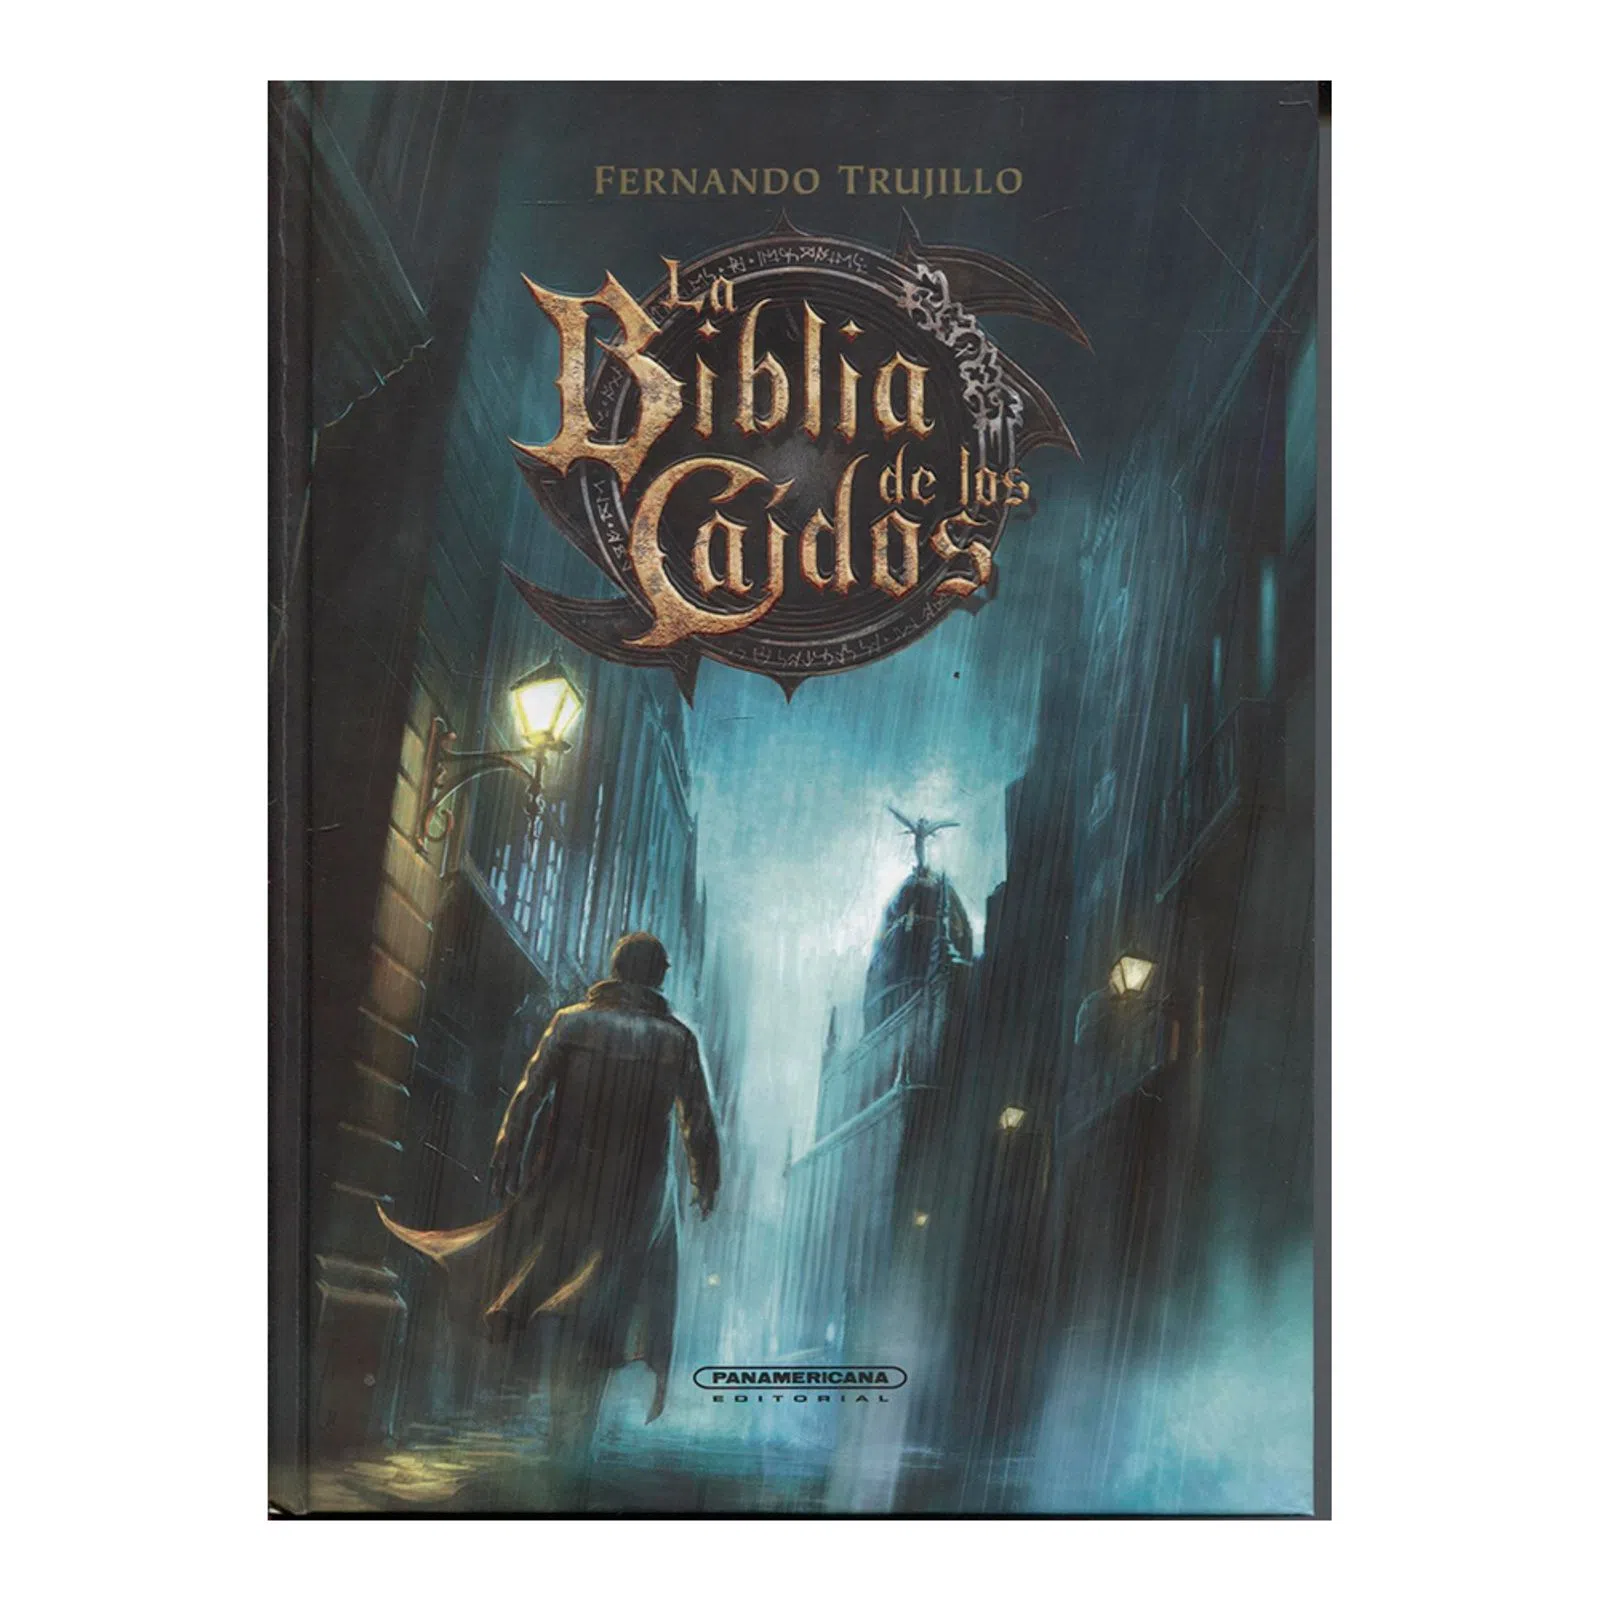 'La Biblia de los Caídos', saga del escritor madrileño Fernando Trujillo iniciada en el año 2011. Editorial Panamericana.